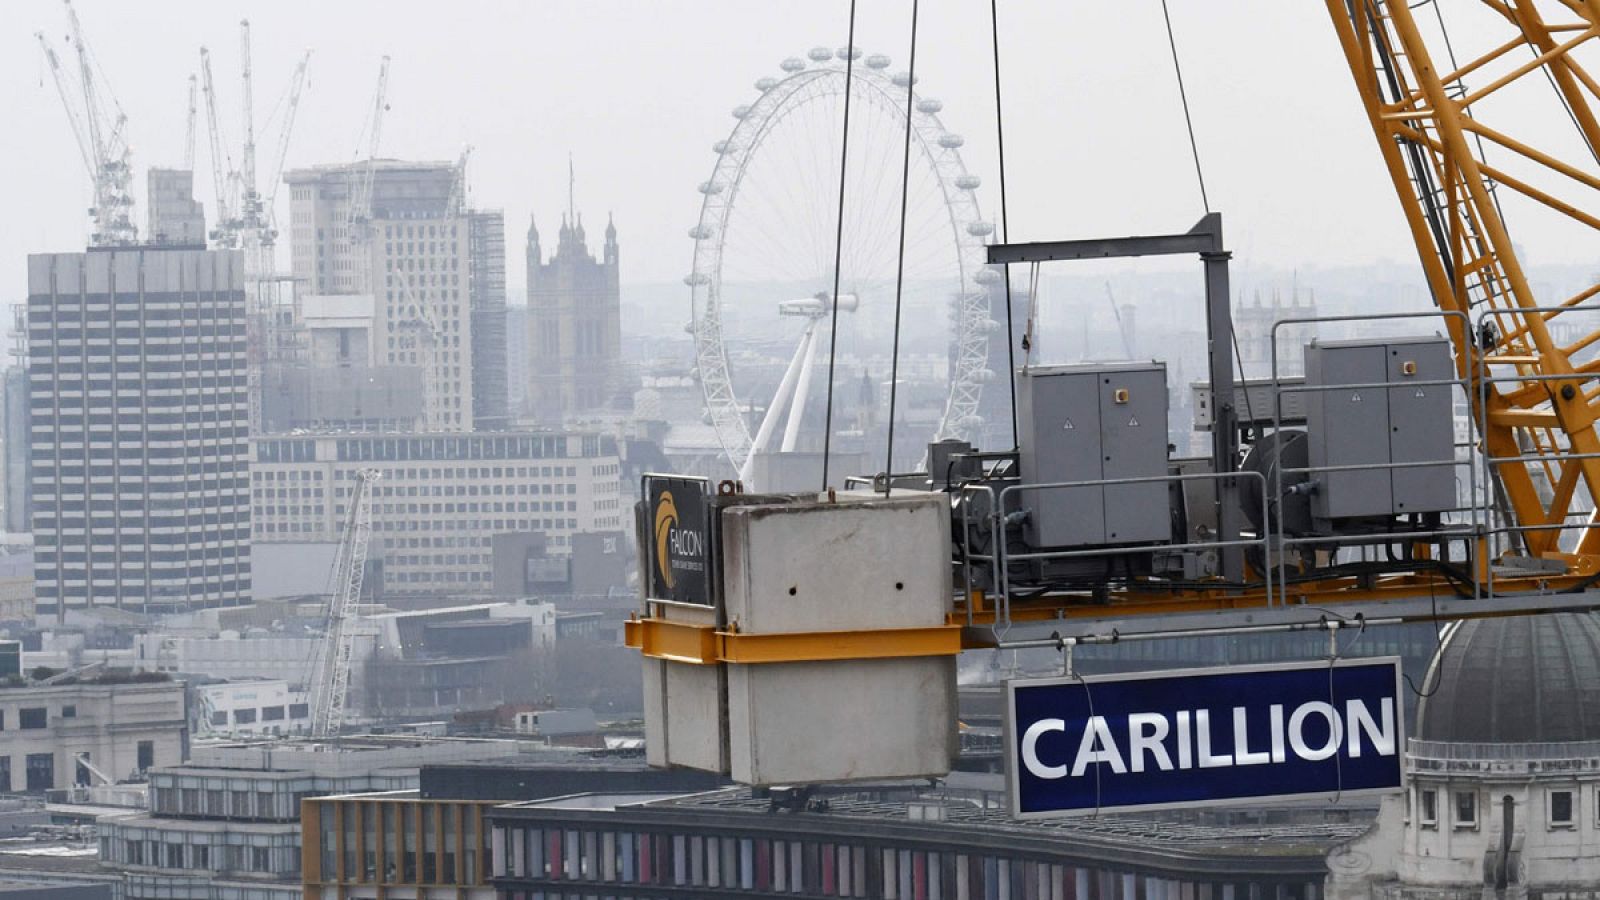 Una grúa del gigante Carillion situada en el centro de Londres, muy cerca de la noria London Eye y el Parlamento británico